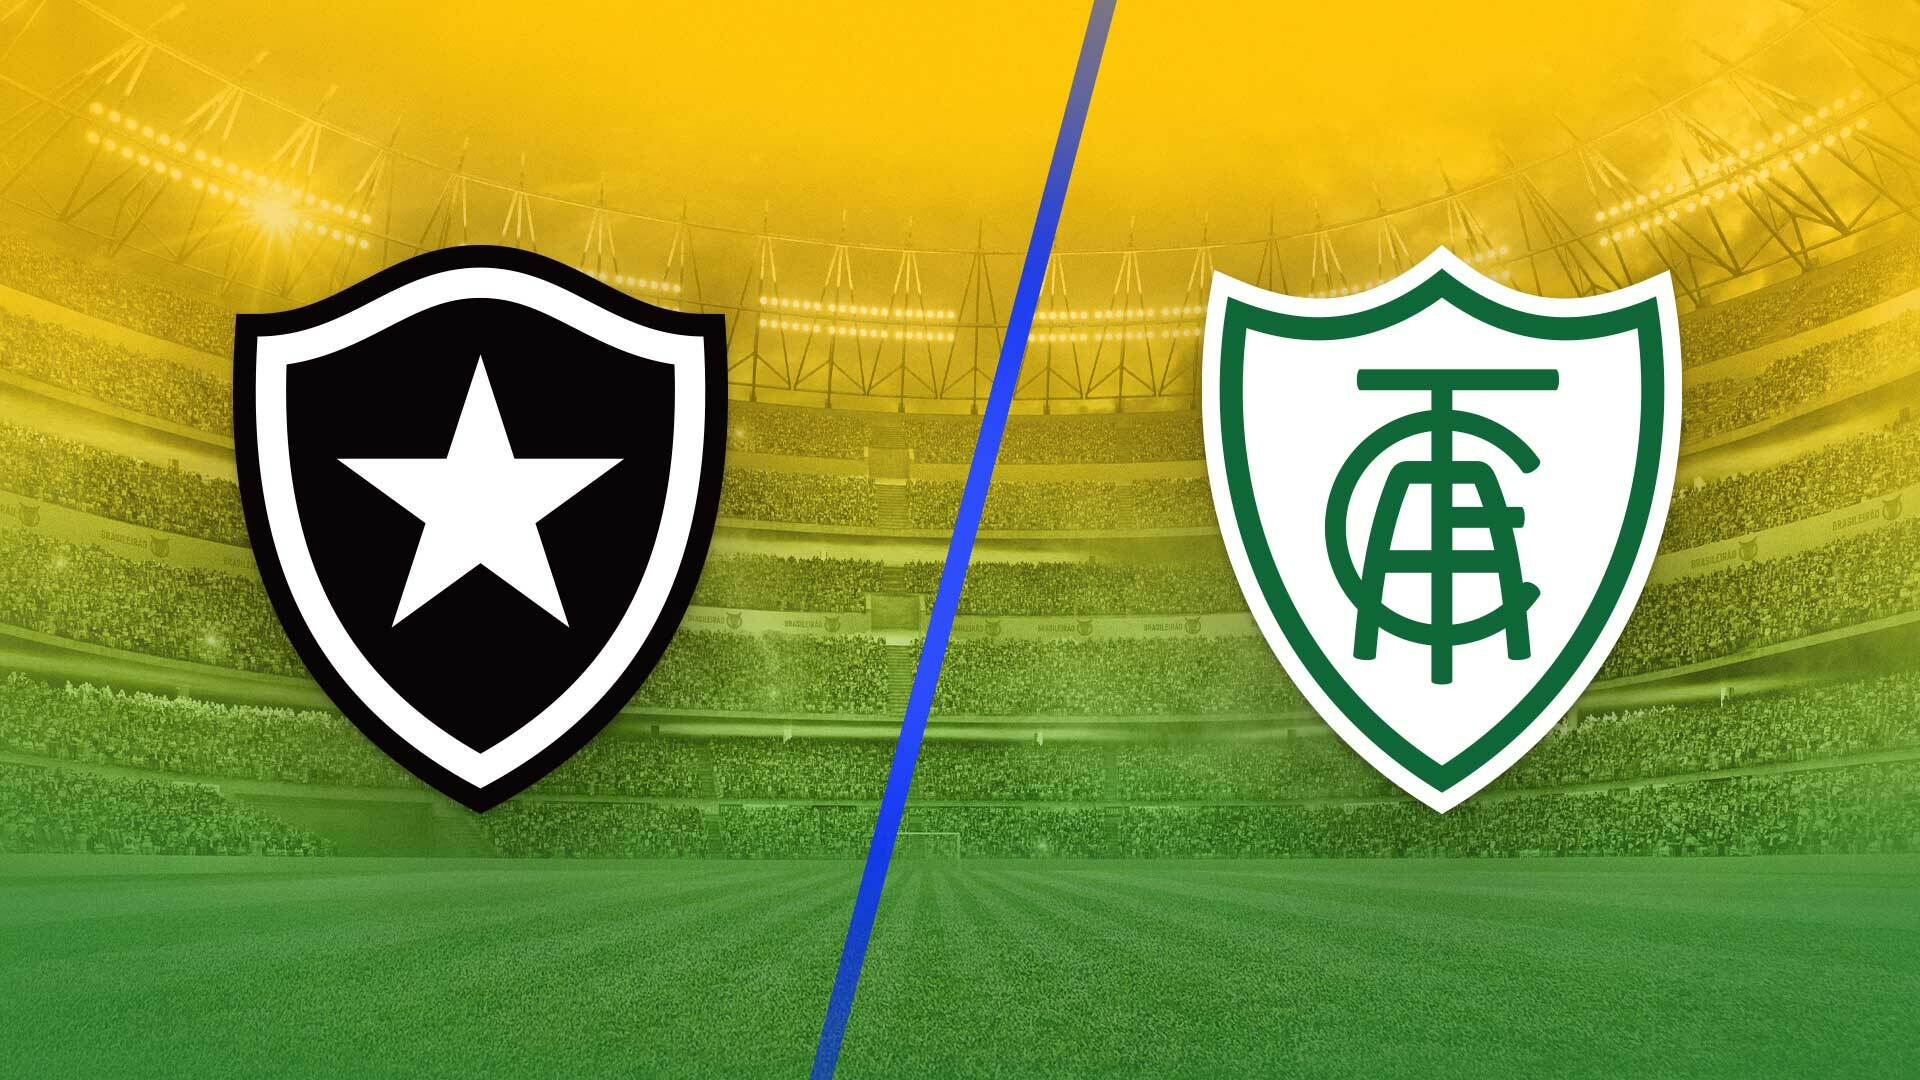 Grêmio vs Brasil de Pelotas: A Rivalry of Rio Grande do Sul